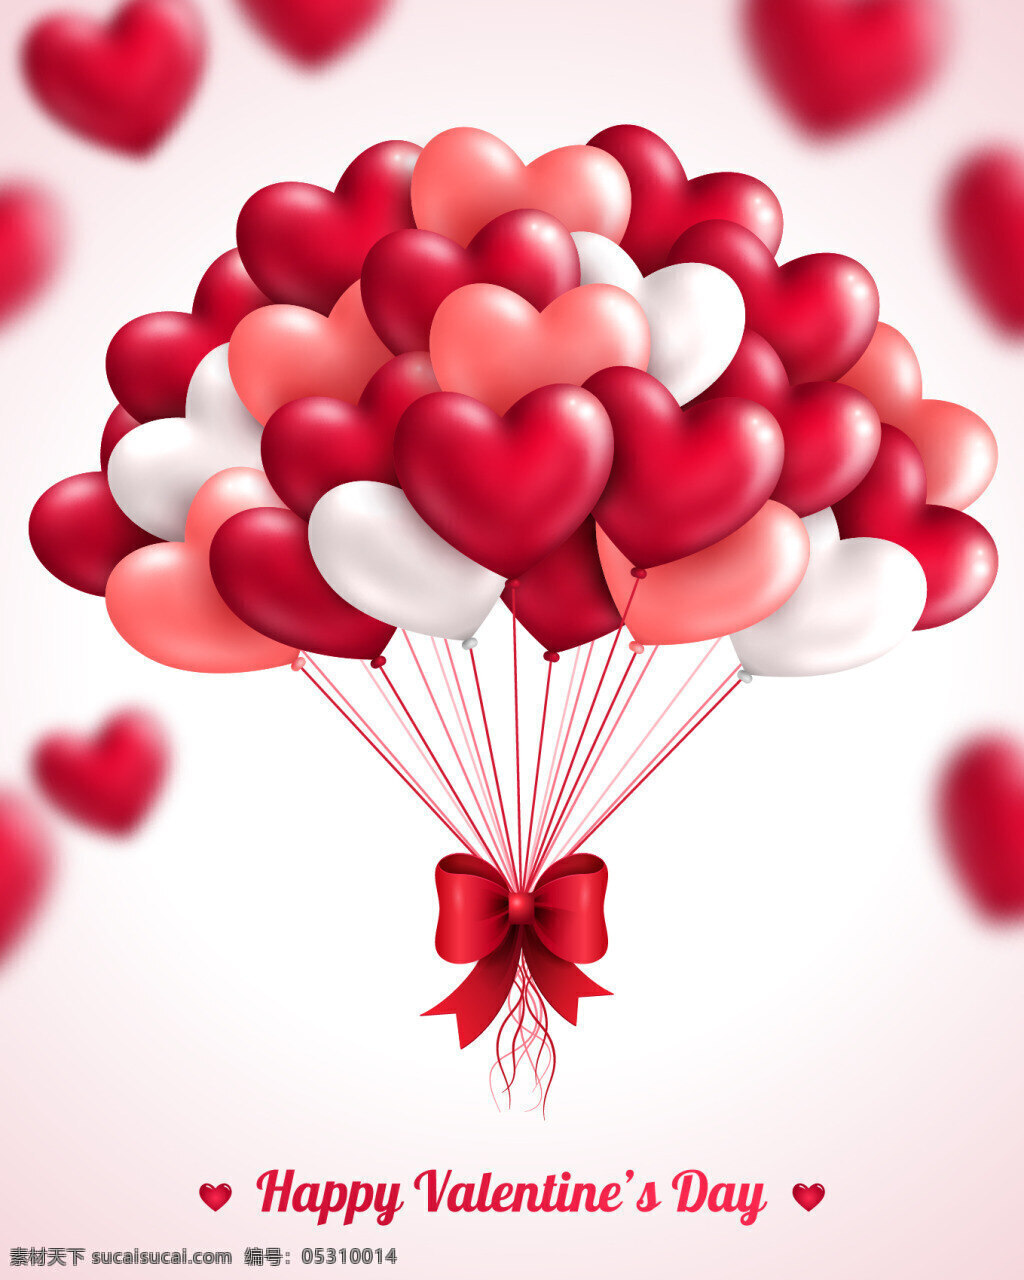 心形 气球 矢量 爱情 爱心 七夕 情人节 节日素材 浪漫心形气球